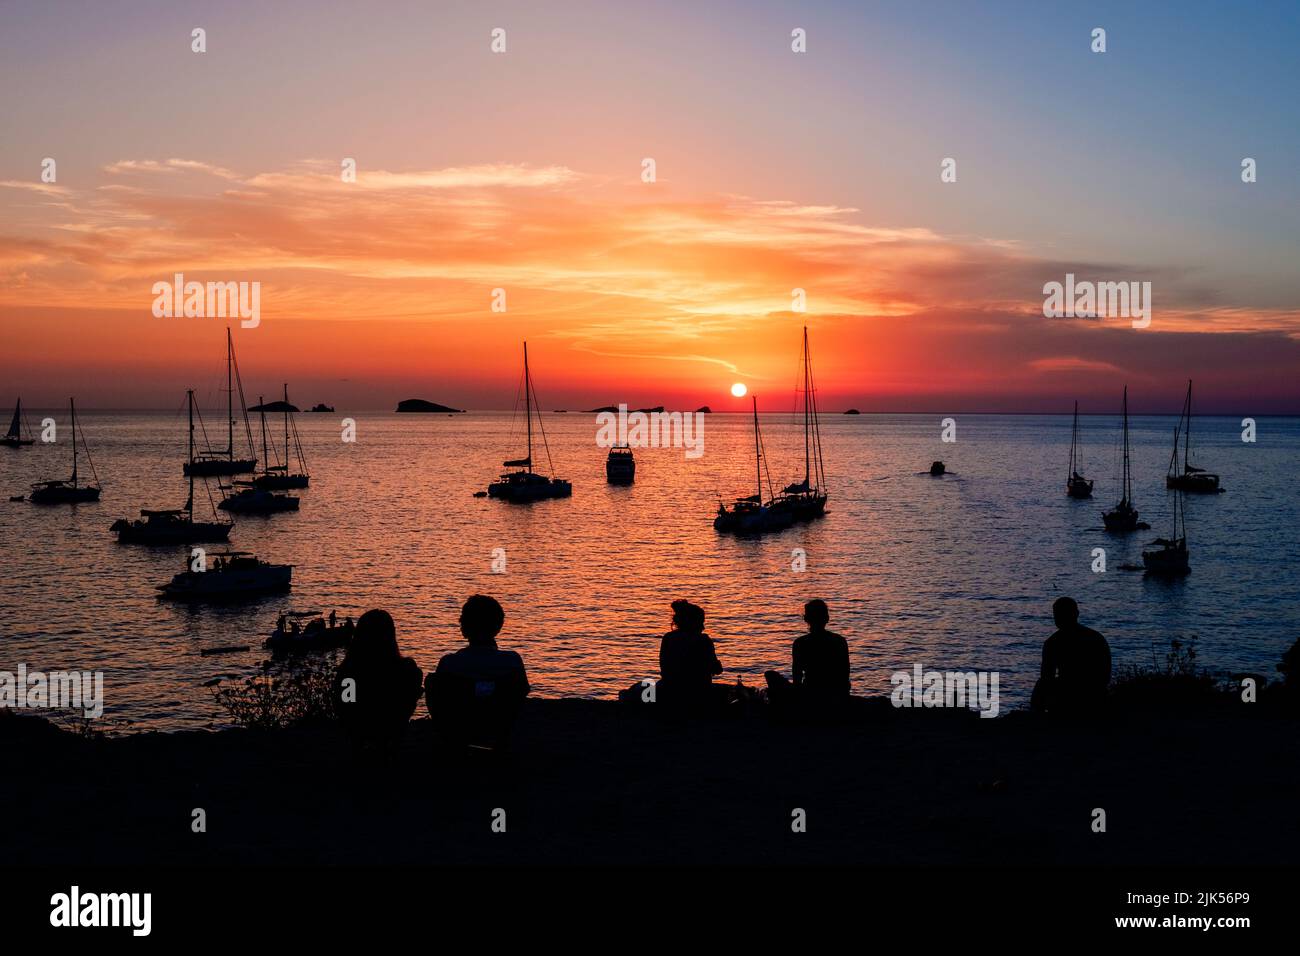 Les jeunes admirent un magnifique coucher de soleil sur l'horizon de la mer Méditerranée. Banque D'Images